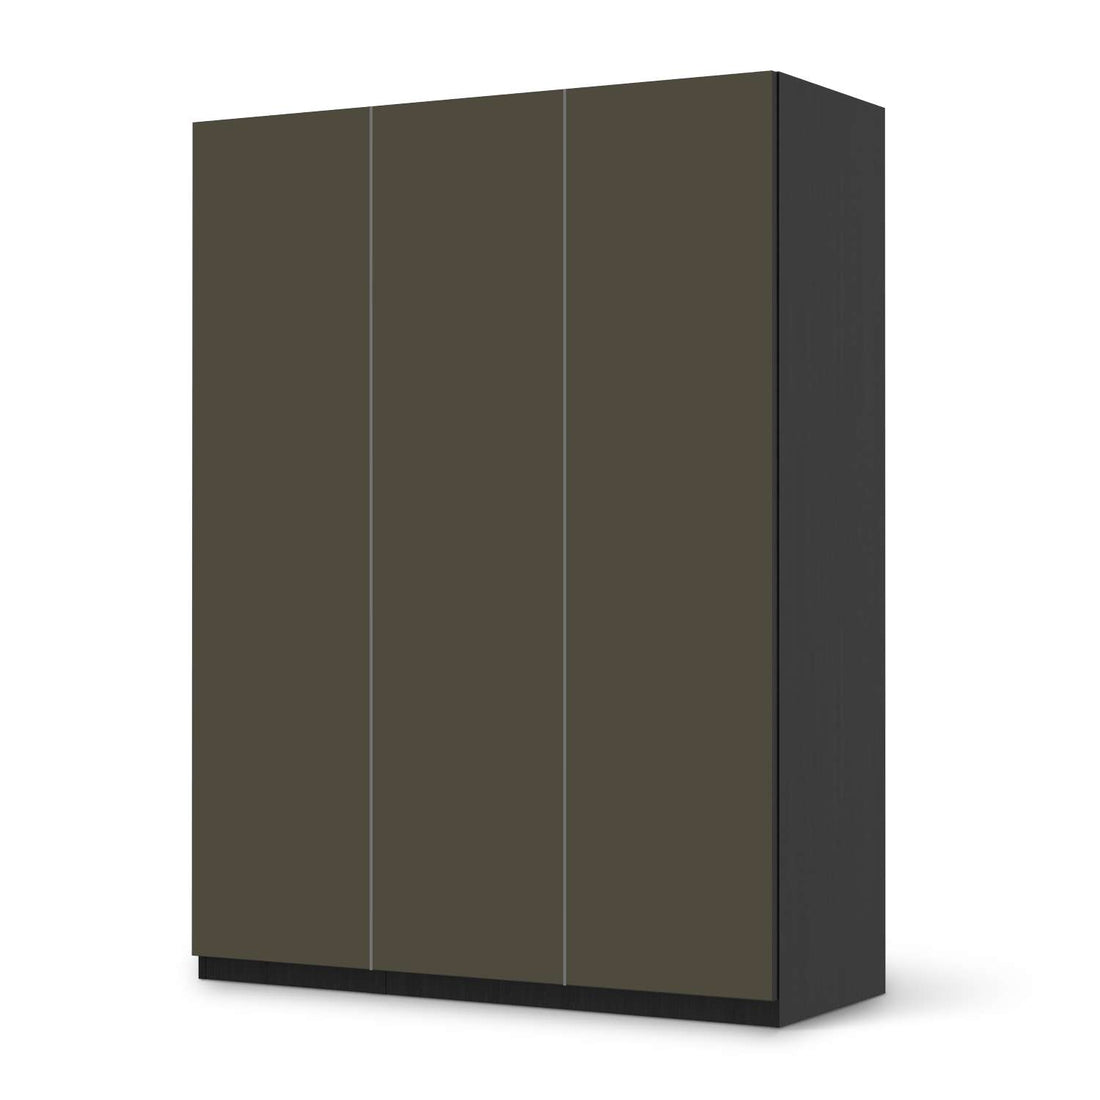 Folie für Möbel Braungrau Dark - IKEA Pax Schrank 201 cm Höhe - 3 Türen - schwarz